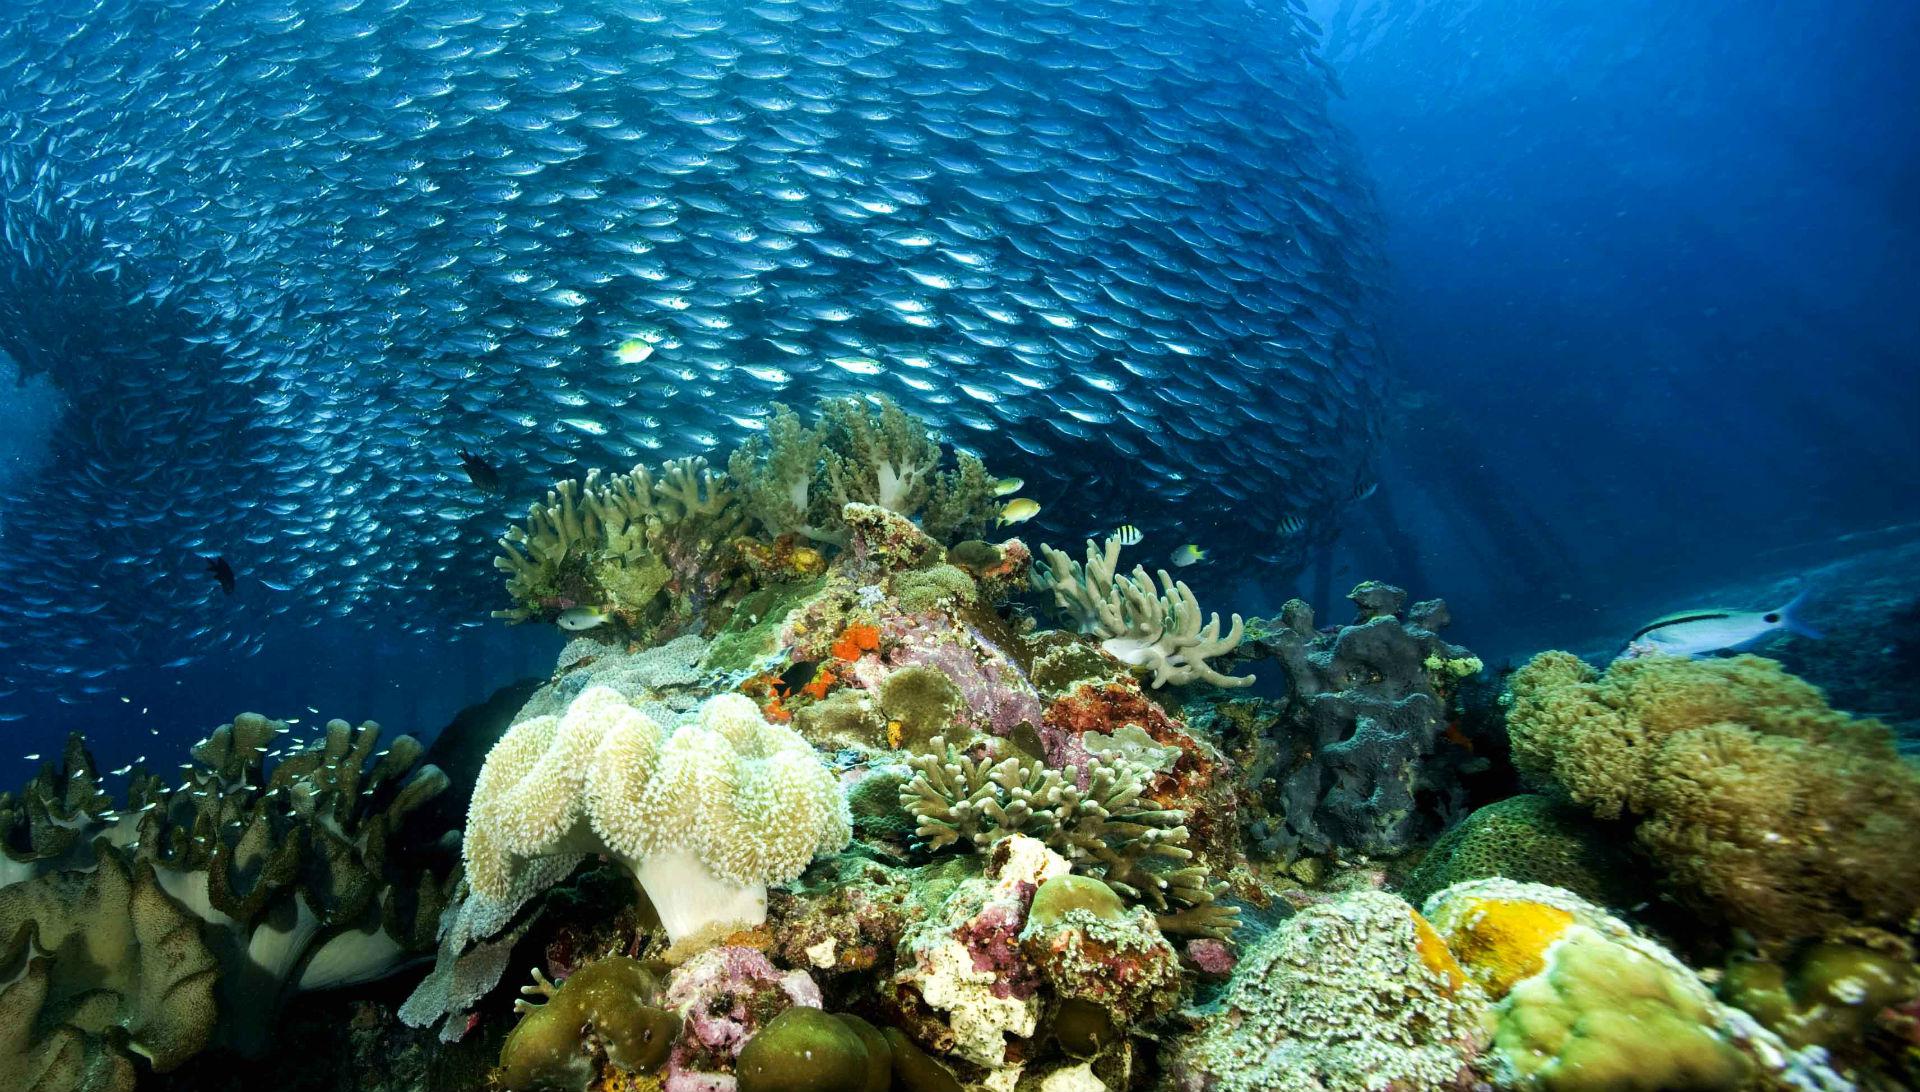 Underwater Ocean Sea Nature Coral Reef Tropical School Image ...